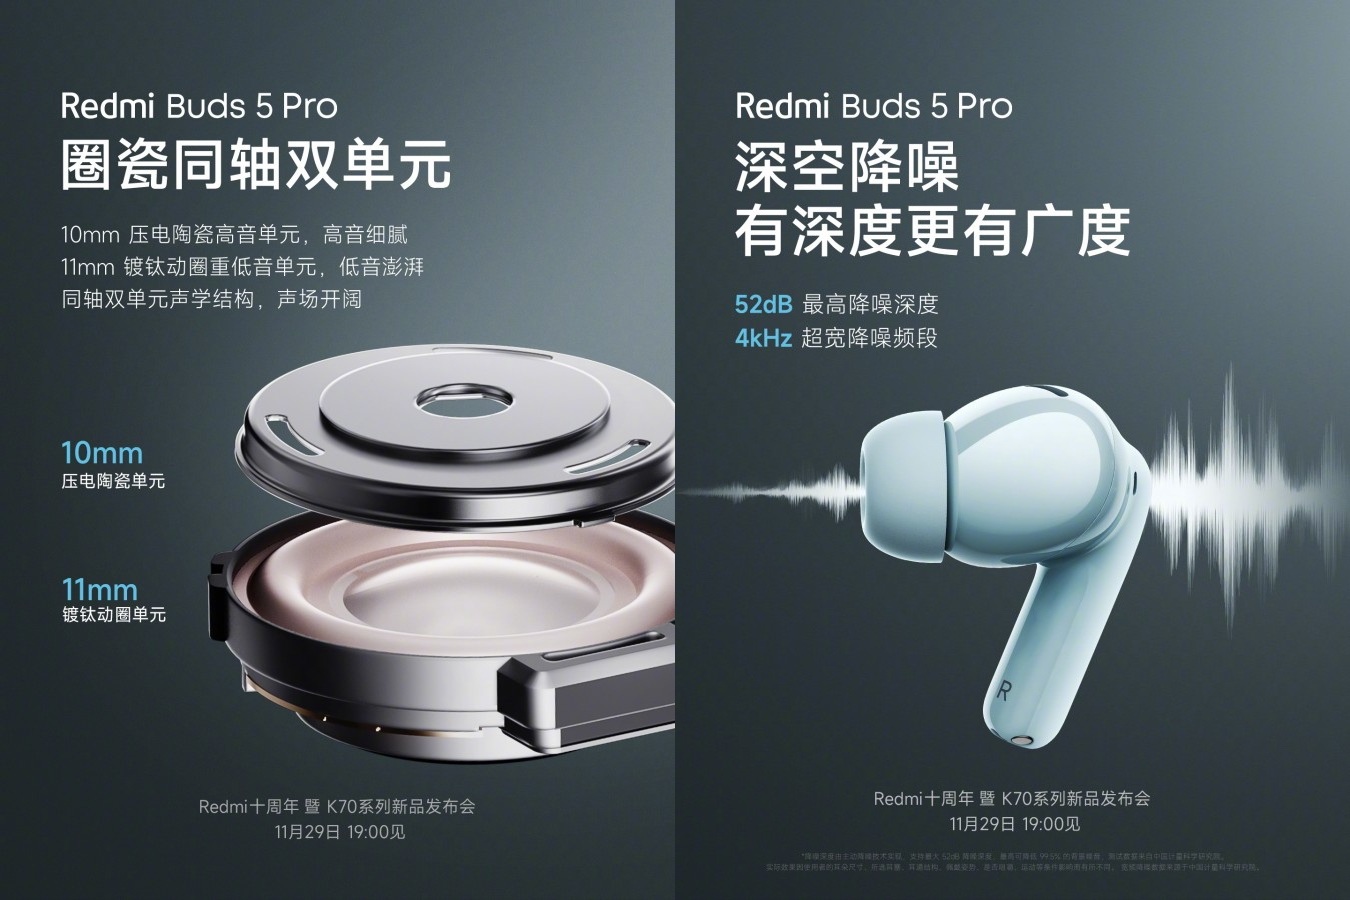 Xiaomi hat die Redmi Buds 5 Pro Kopfhörer vorgestellt, die ab 55 Dollar kosten und 10 Stunden ohne Aufladung laufen können